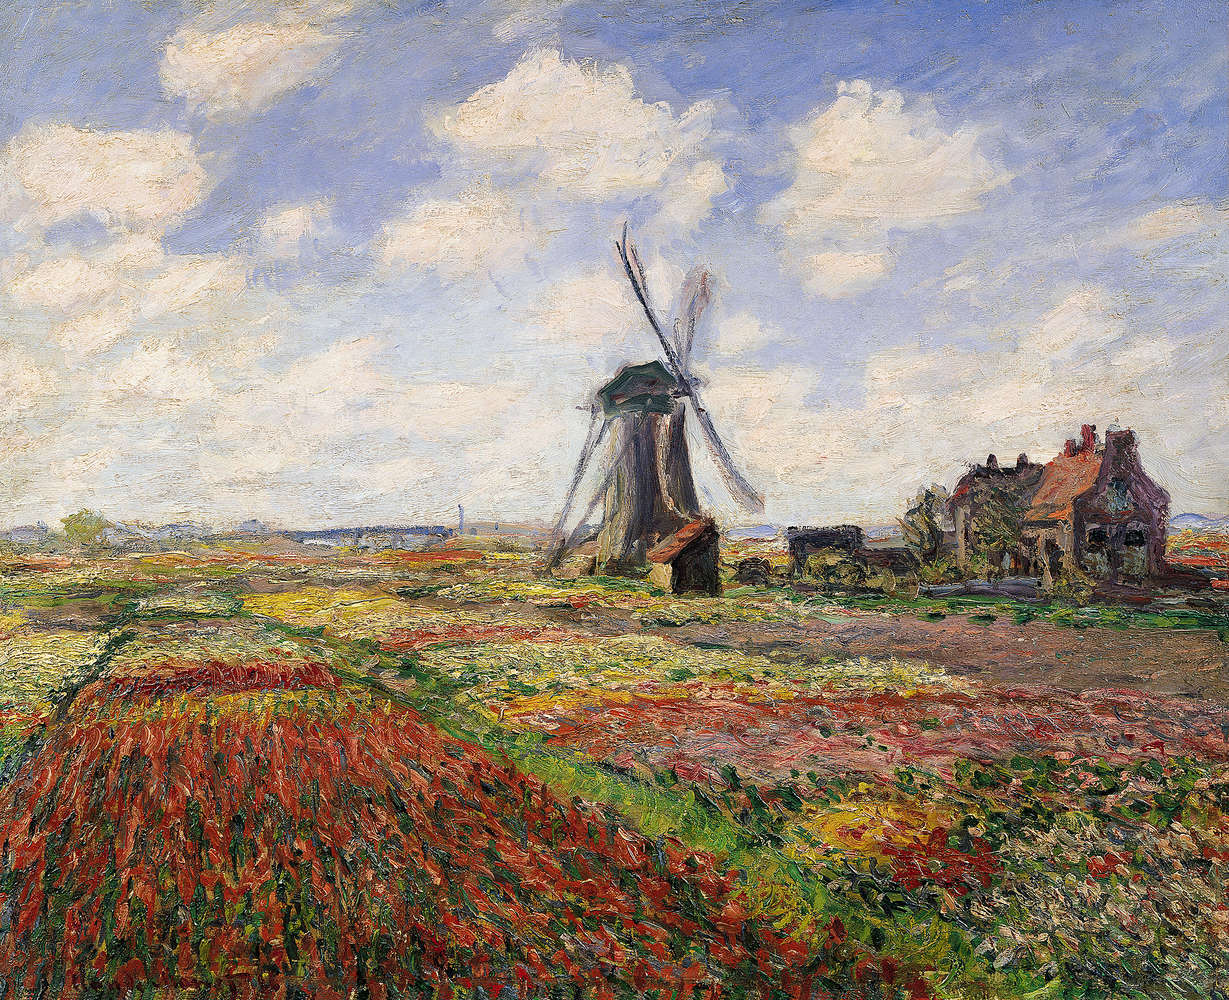             Mural "Campos de tulipanes con el molino de viento de Rijnsburg" de Claude Monet
        